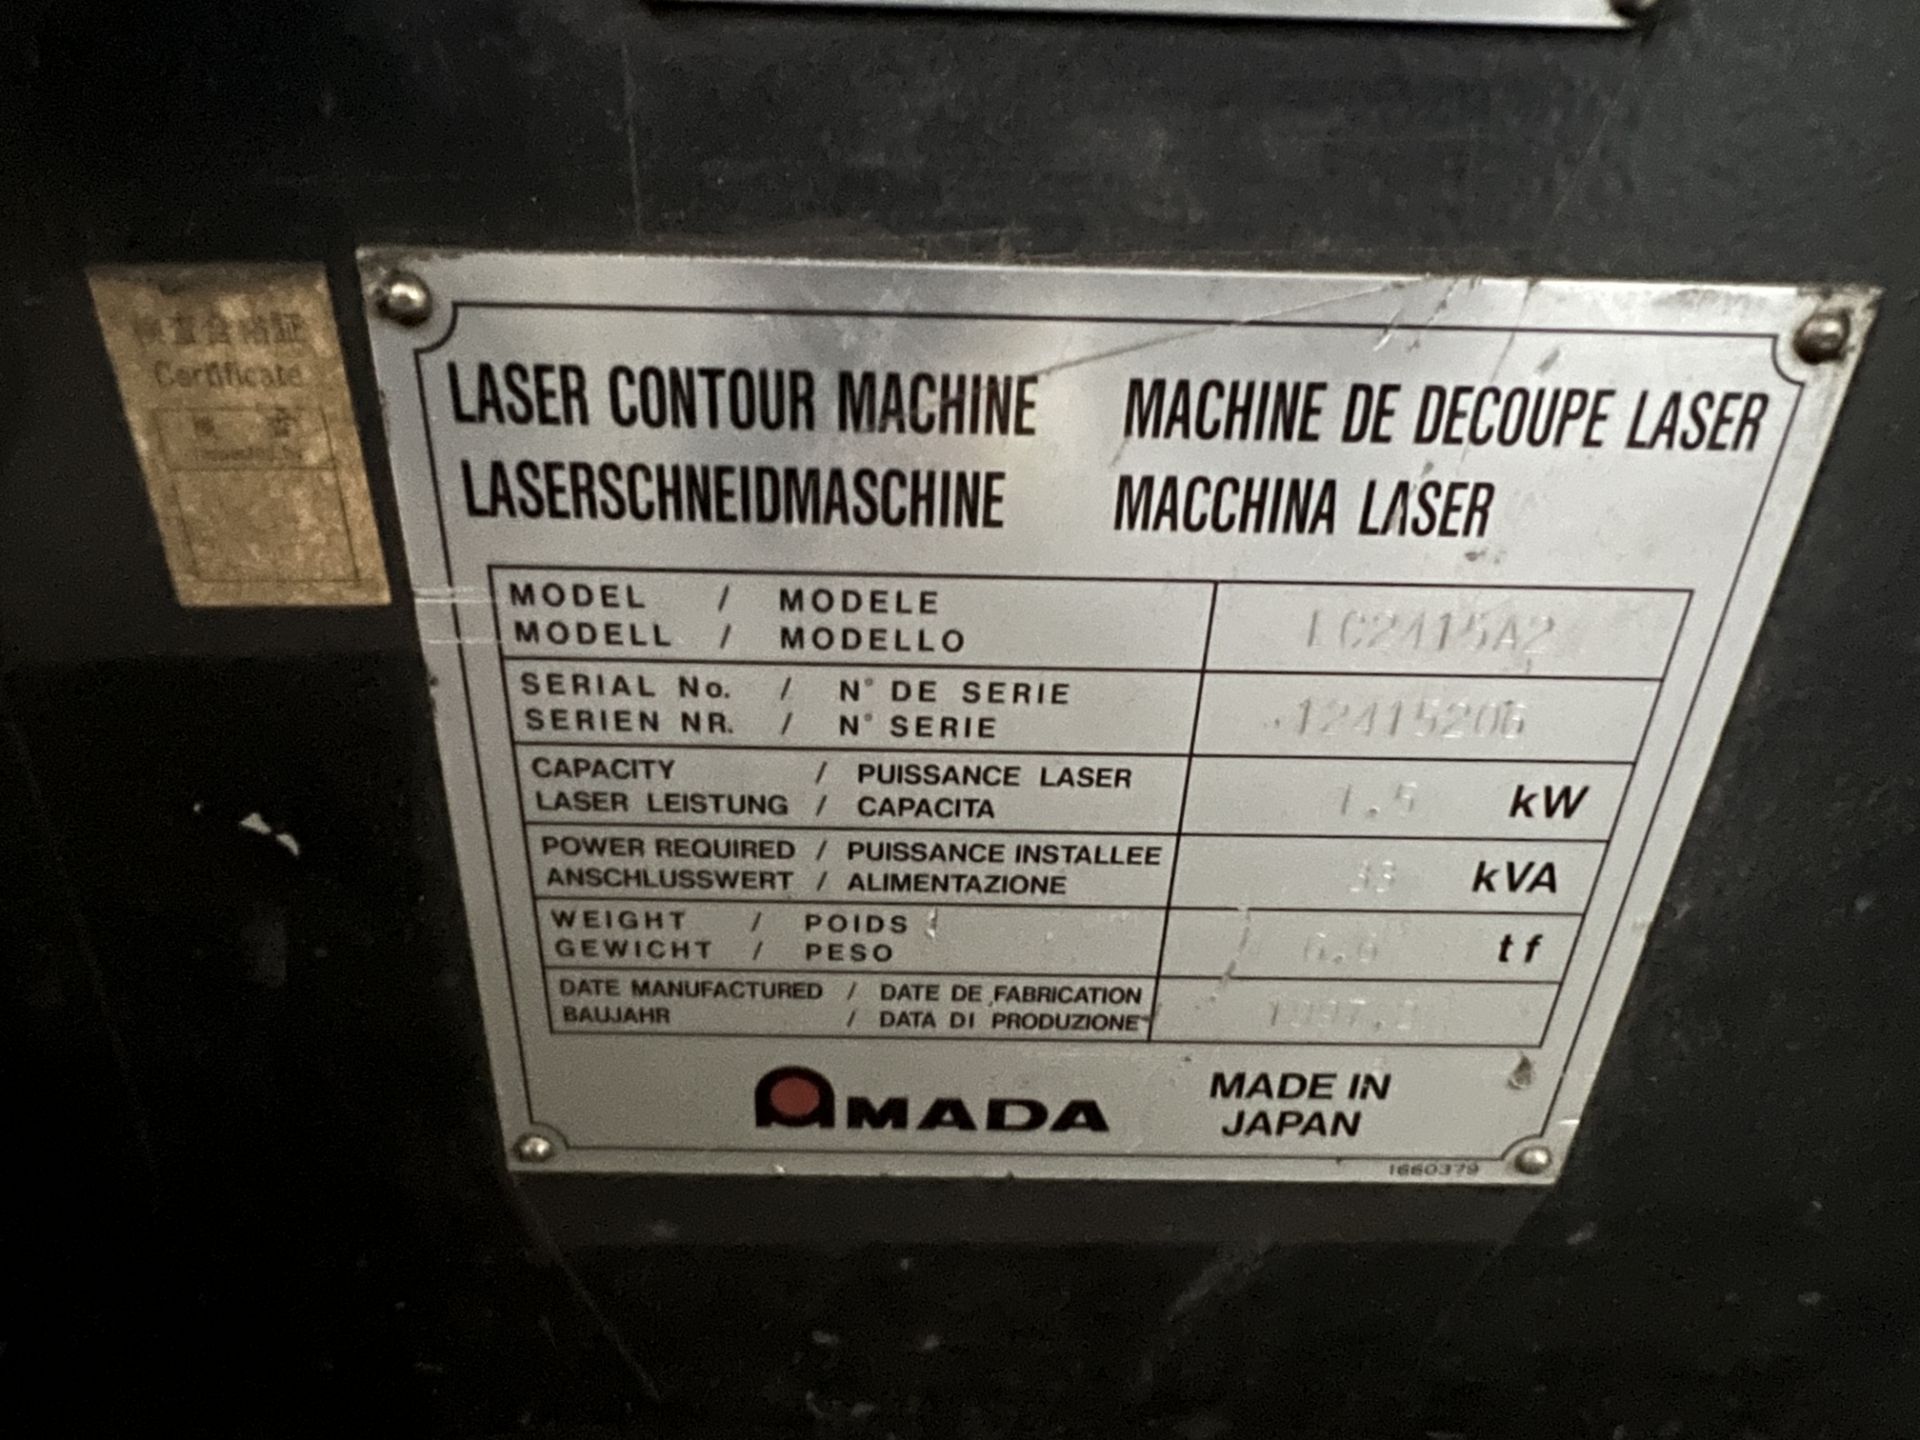 Amada LC-2415A2 1,500 Watt CNC Laser Cutting System, S/N 12415206, 1997 - Image 18 of 18